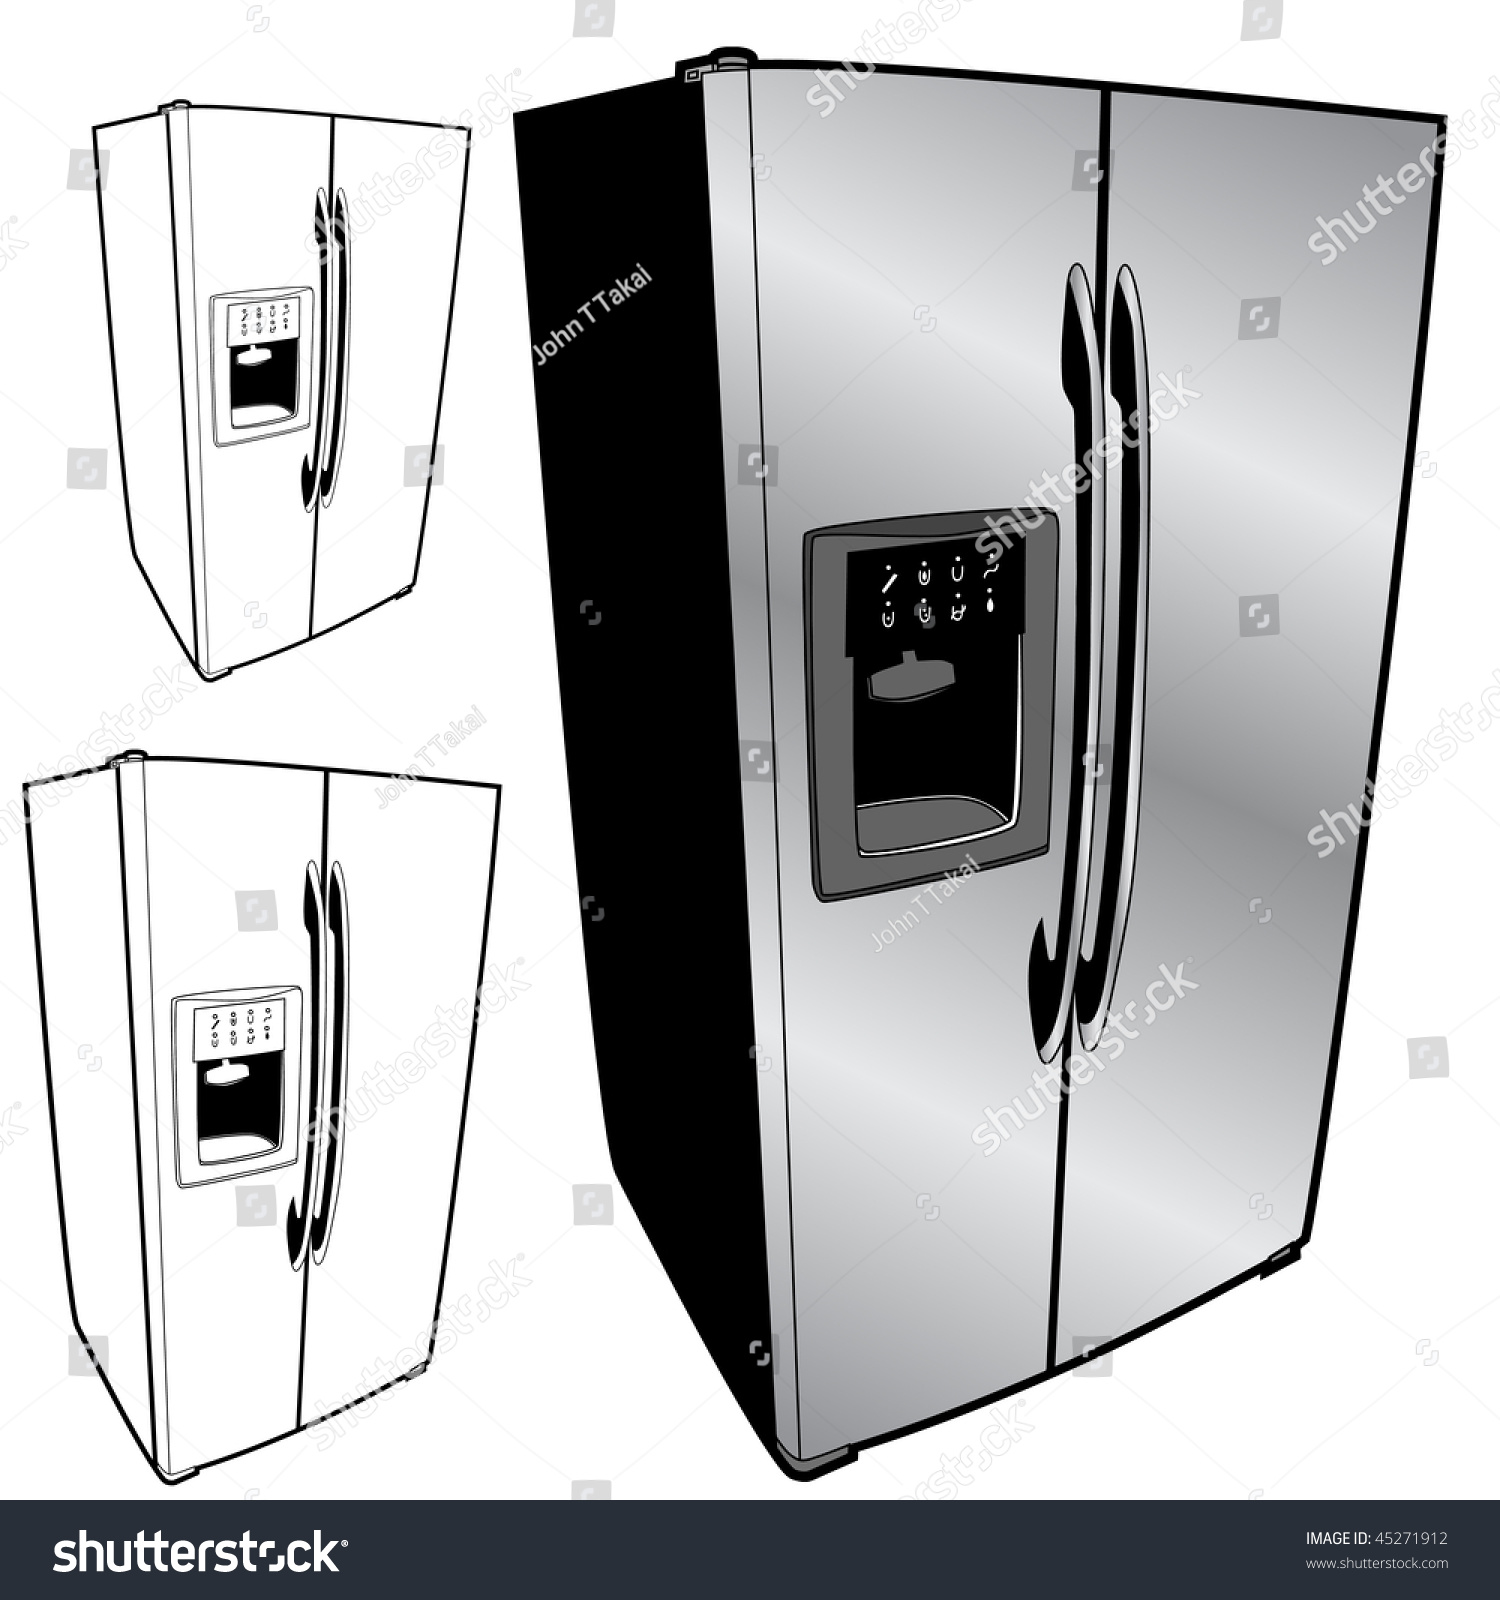 Refrigerator Set Stock Vector Illustration 45271912 : Shutterstock